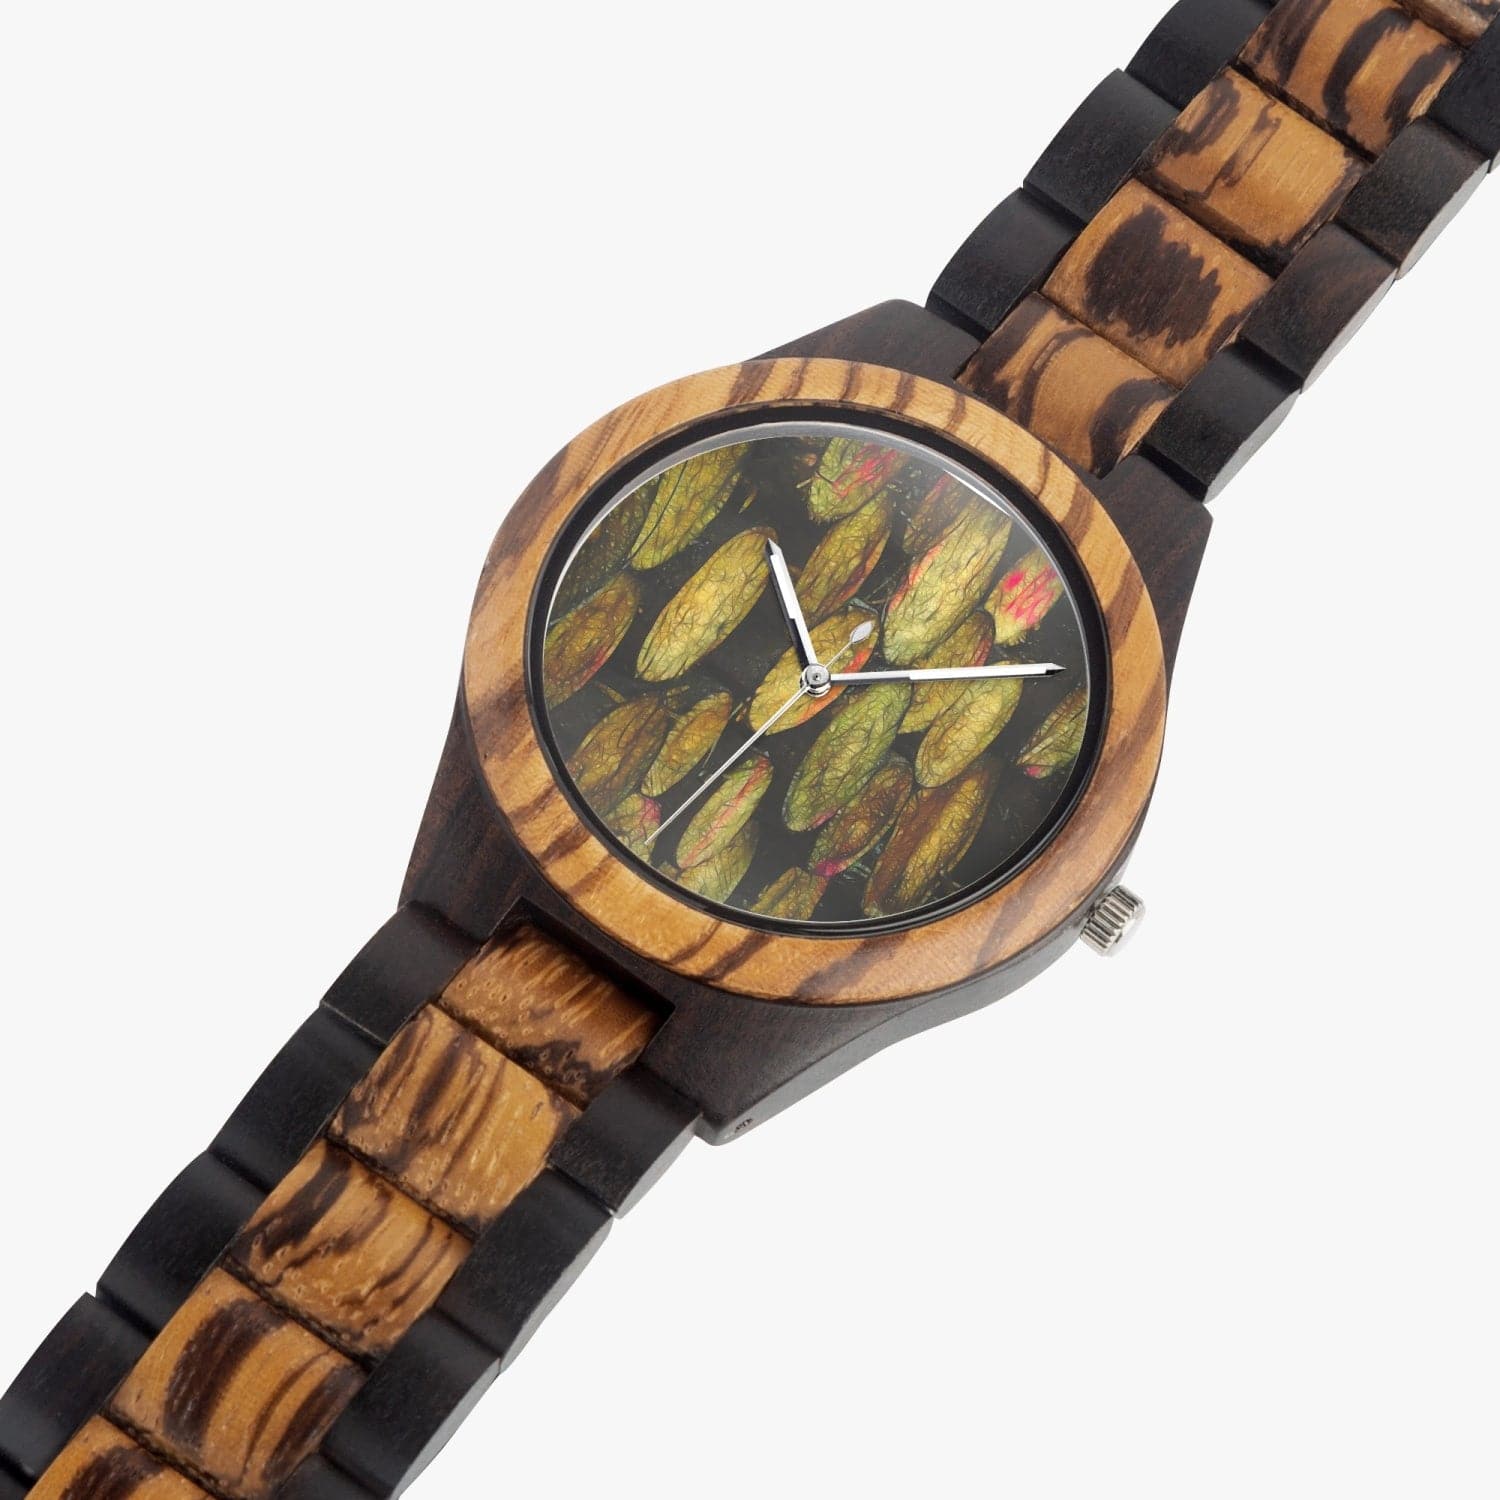 Chopped wood.  Ebony Wooden Watch. Designer watch by Ingrid Hütten